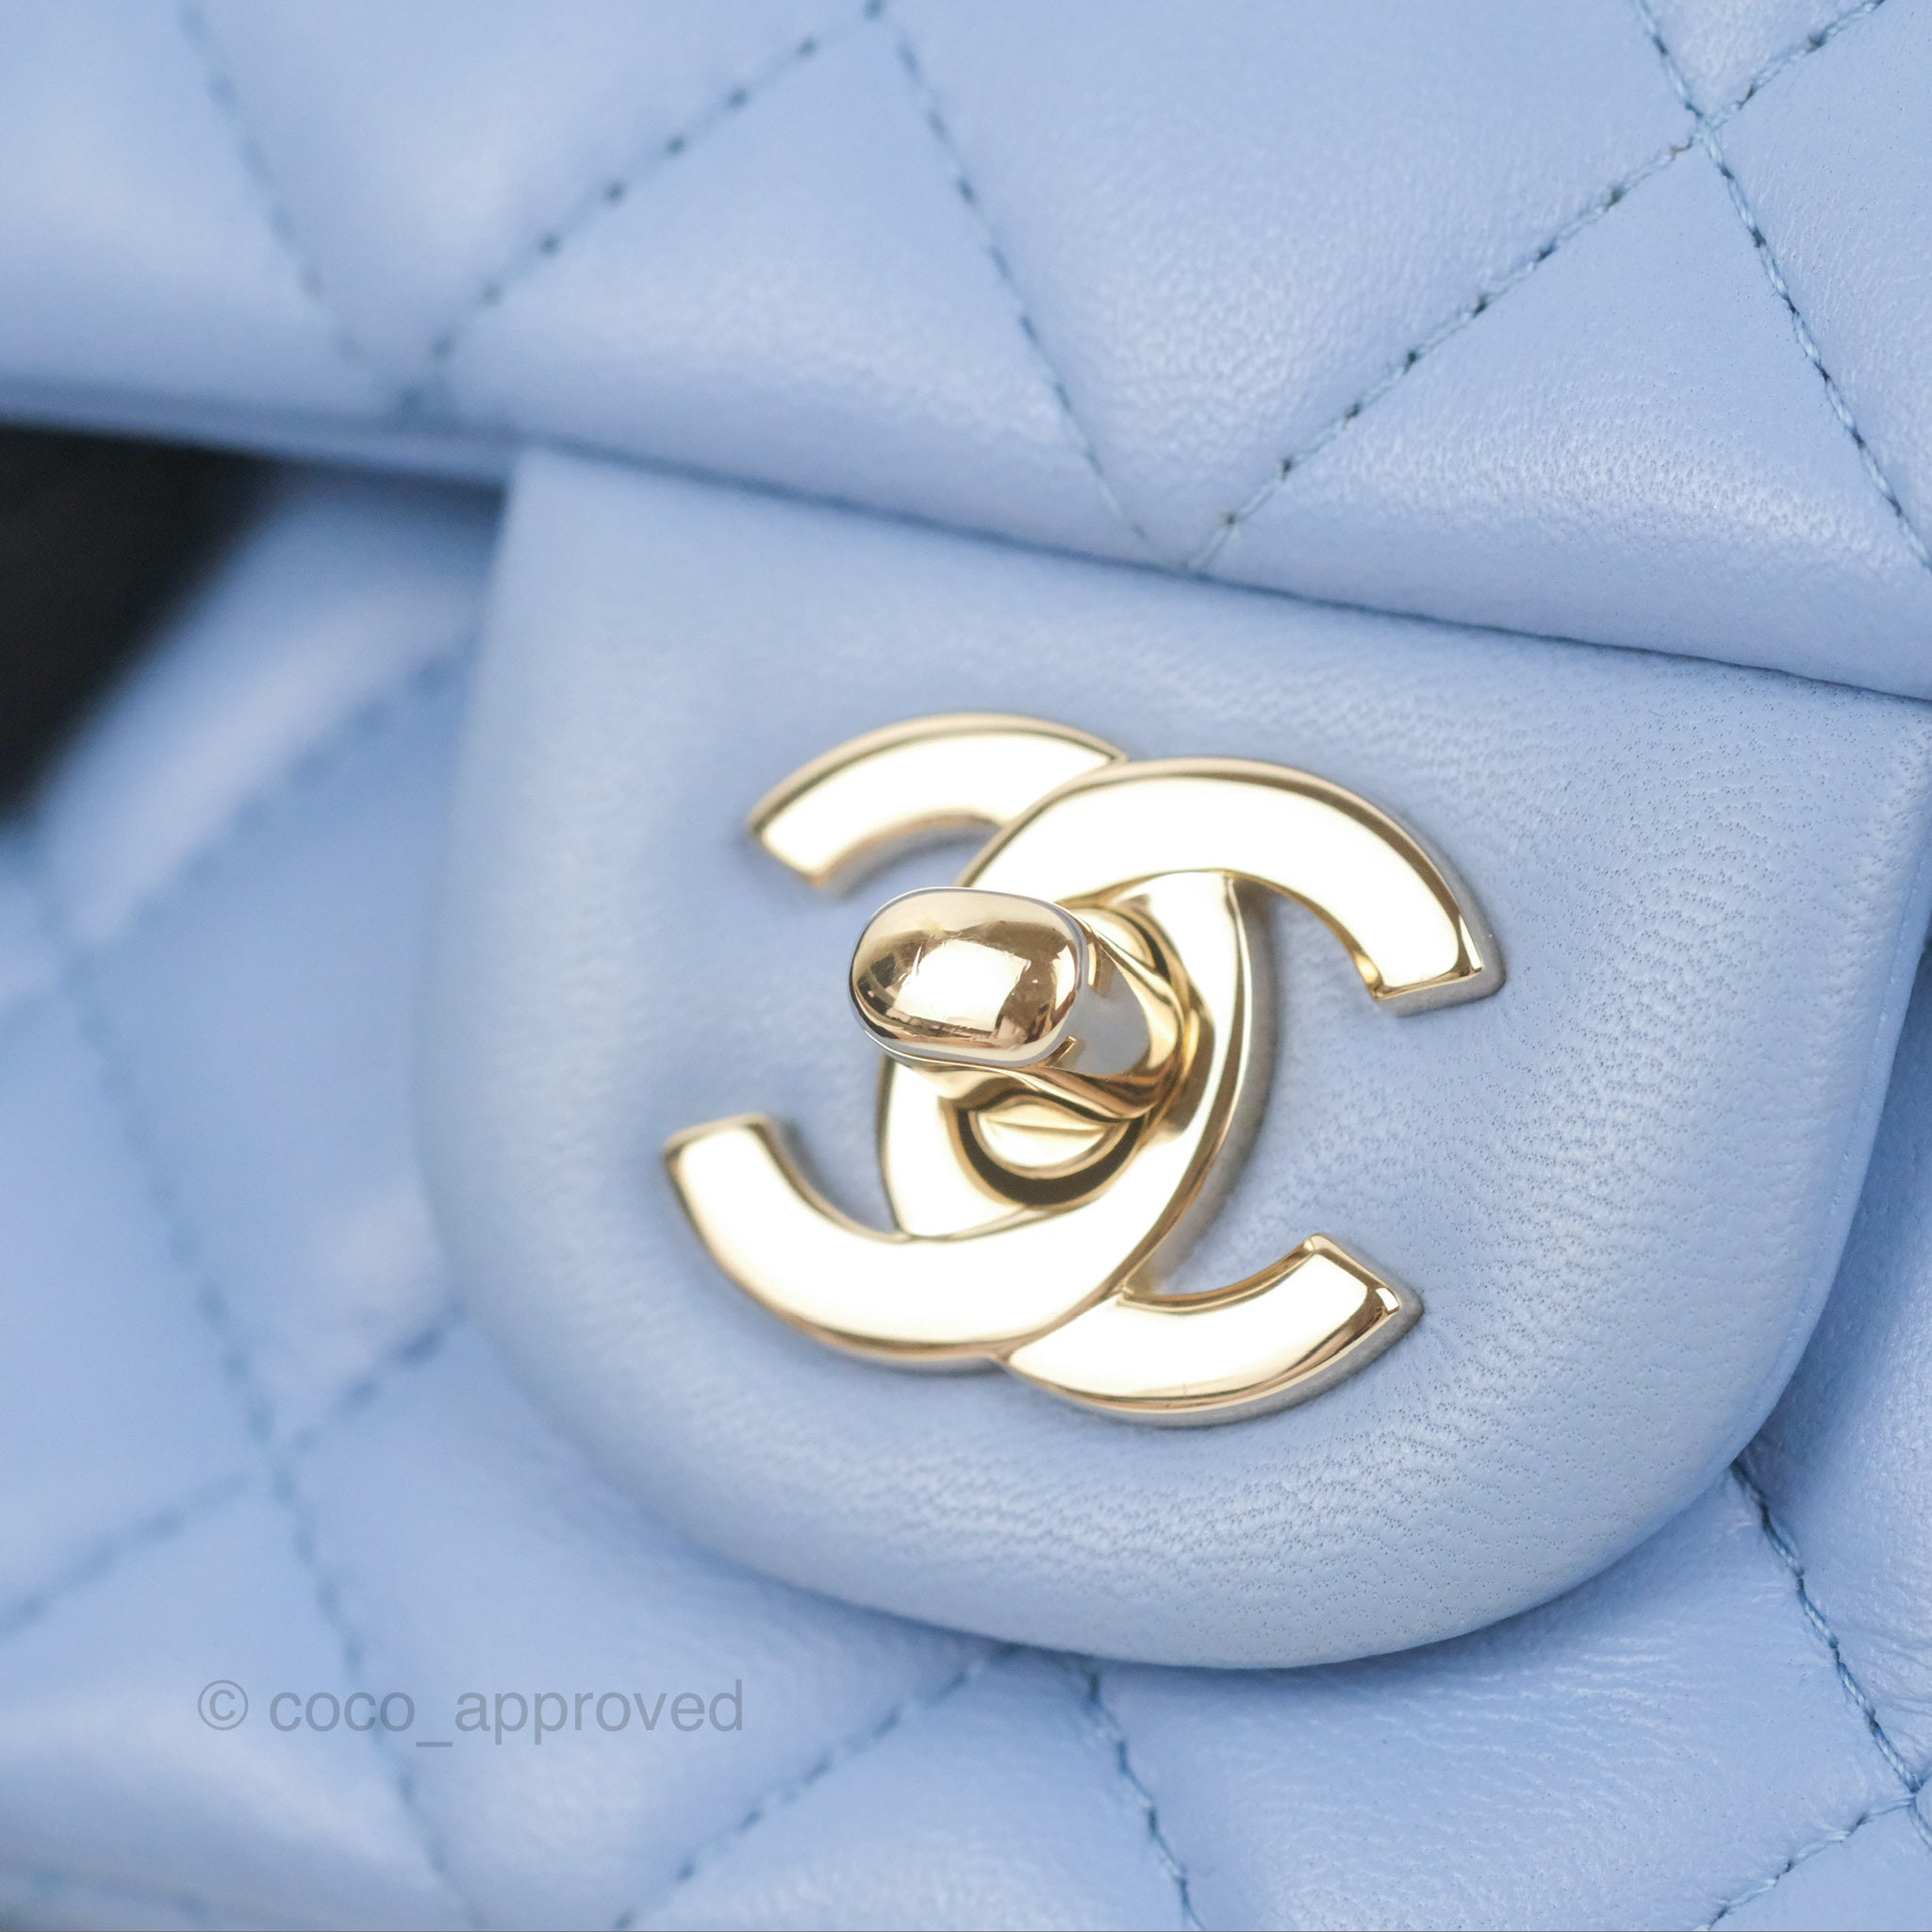 Chanel Mini Square Flap Bag Blue Lambskin Light Gold Hardware